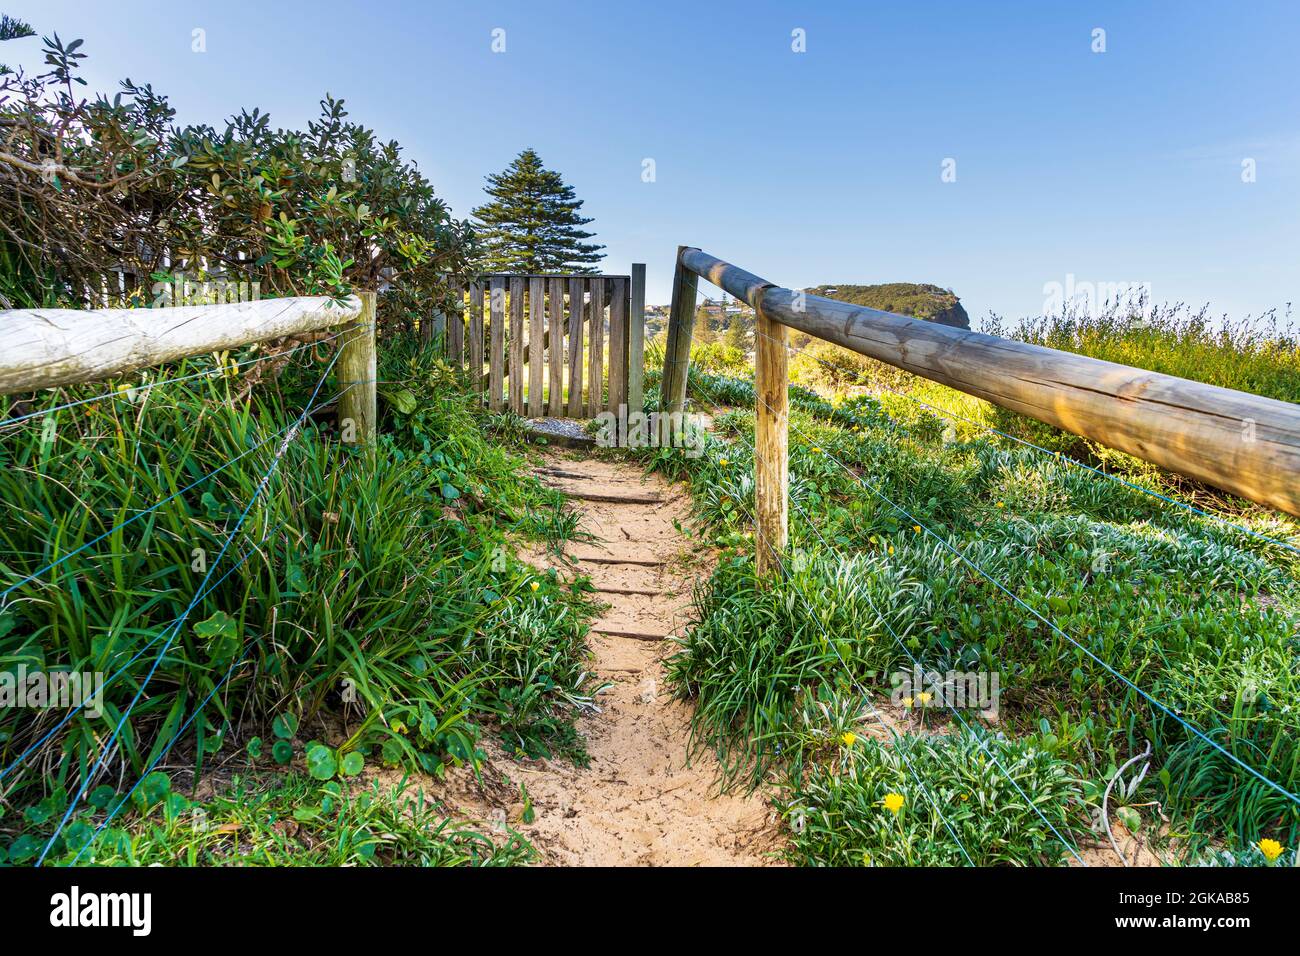 Rustico cancello di legno e pista di sabbia alla spiaggia con pali di legno e piante fiorite Foto Stock